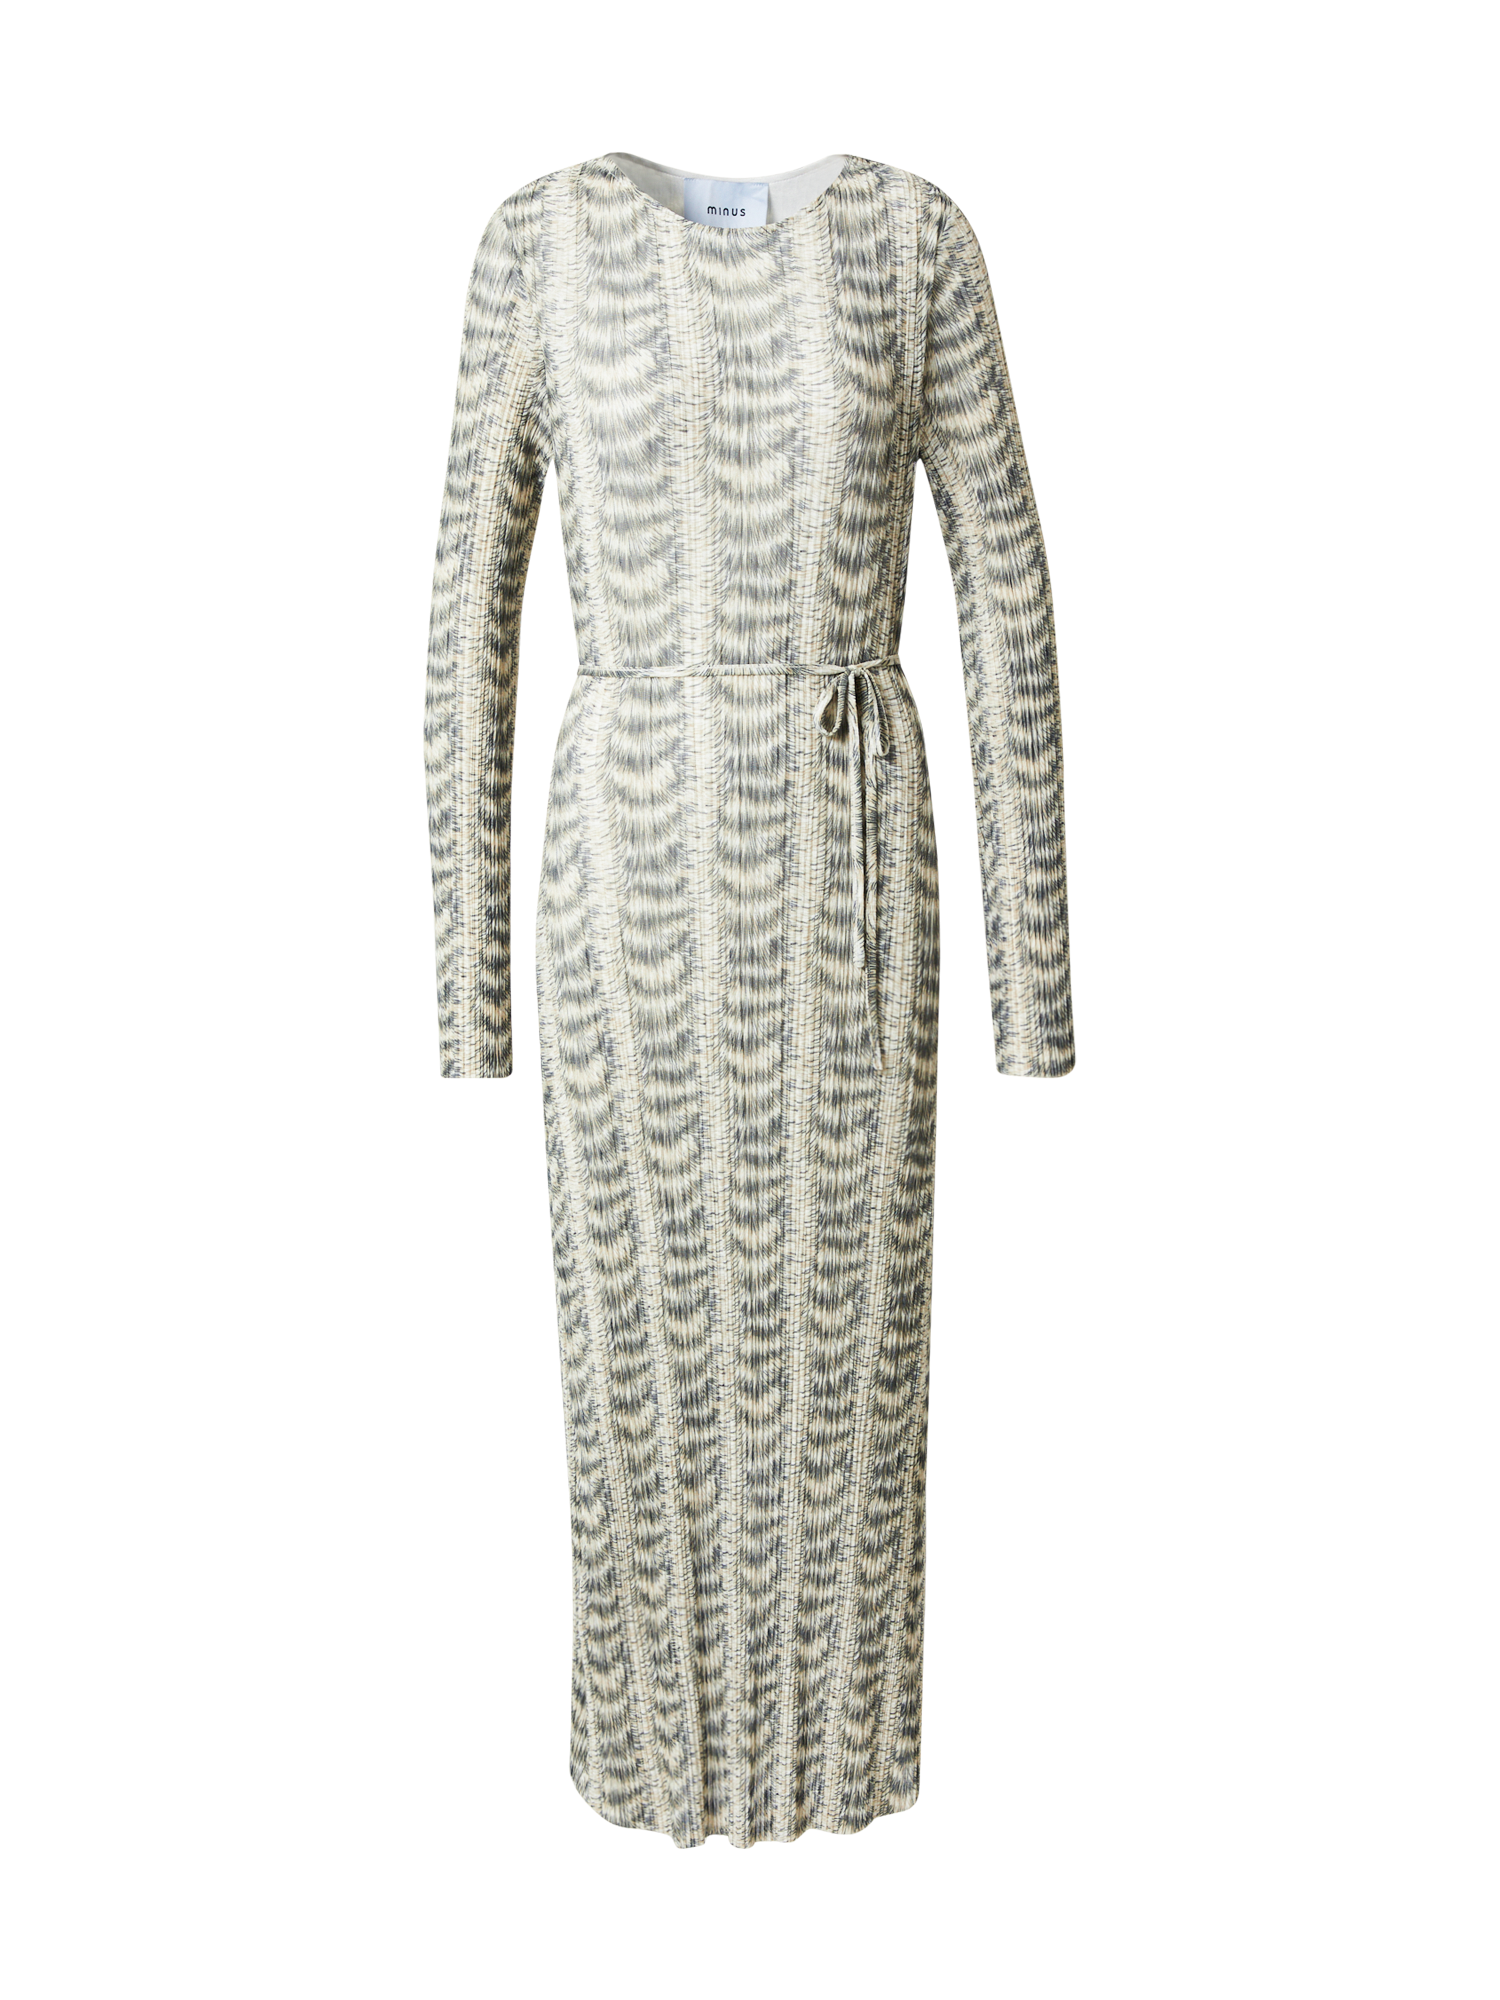 Sukienki VBqXN minus Sukienka Carola w kolorze Beżowy, Szarobeżowym 